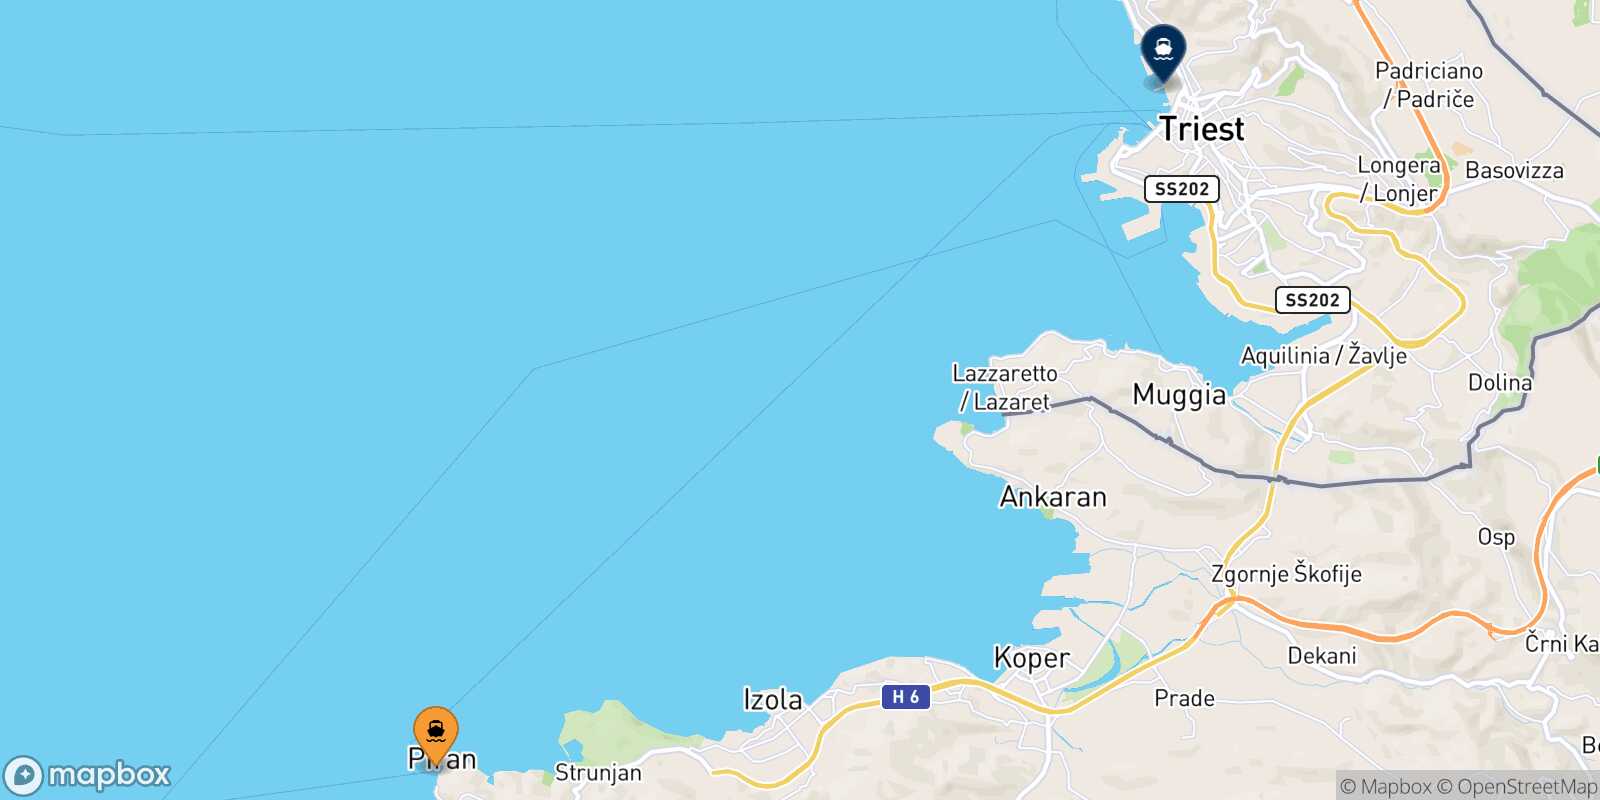 Mappa dei porti collegati con  Trieste